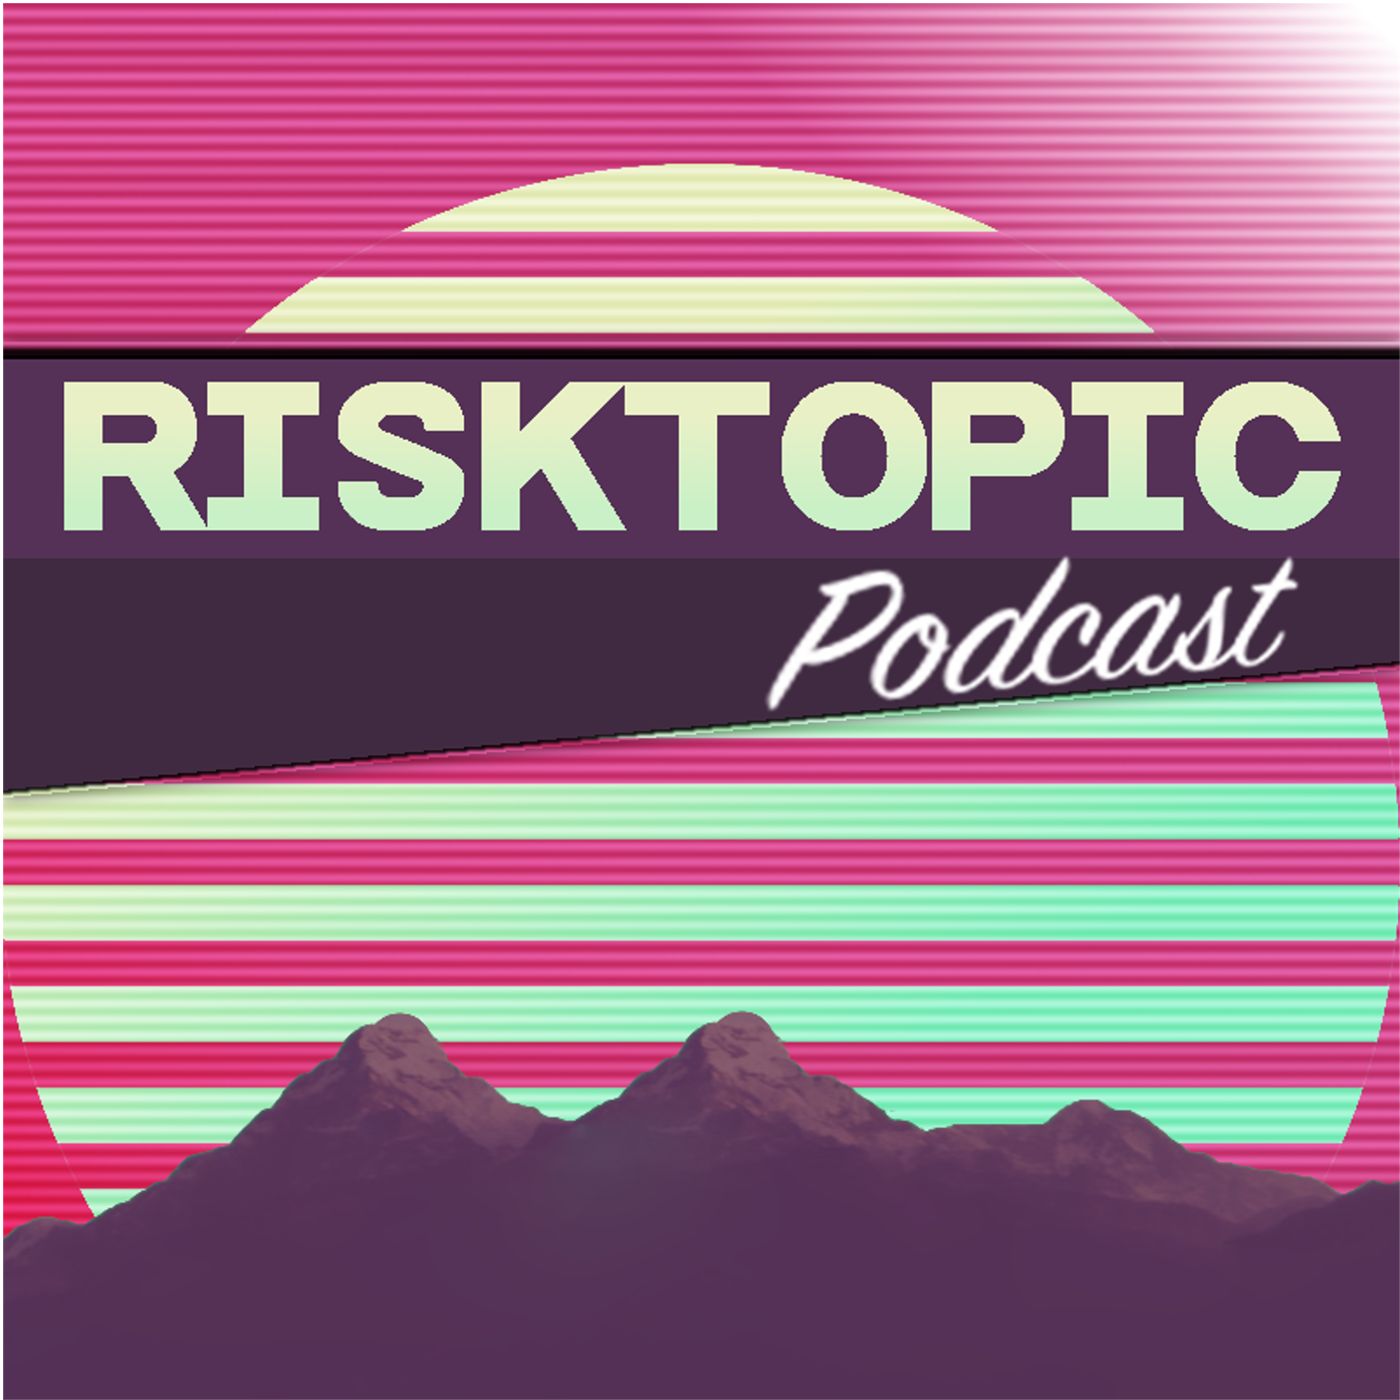 Risktopic Podcast